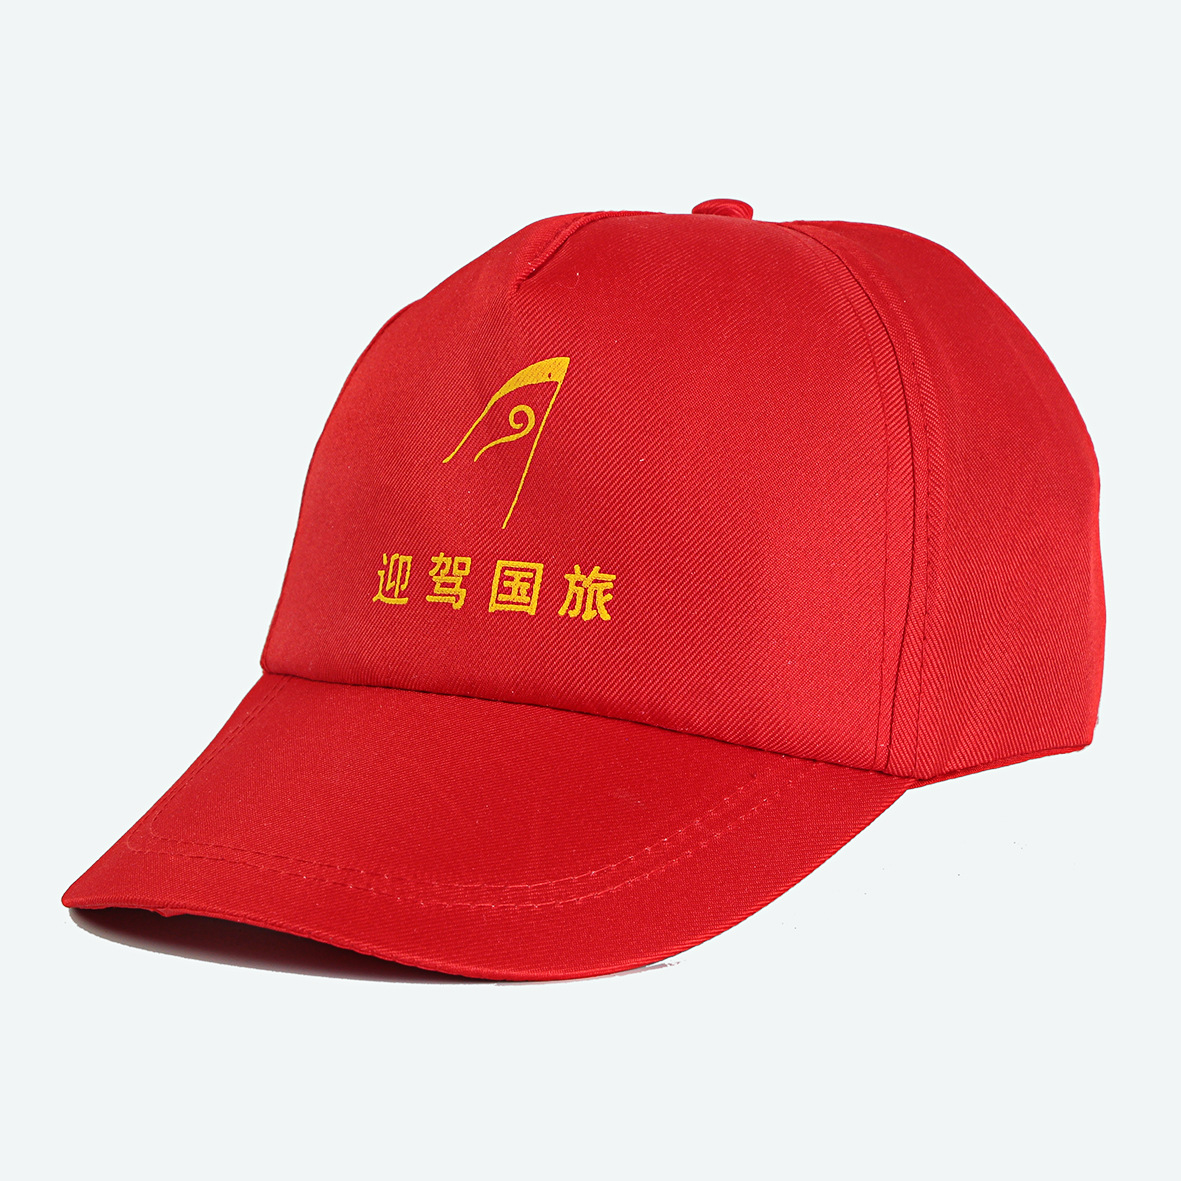 刺绣工作帽 定制旅游广告帽 青年志愿者帽子 印字遮阳帽